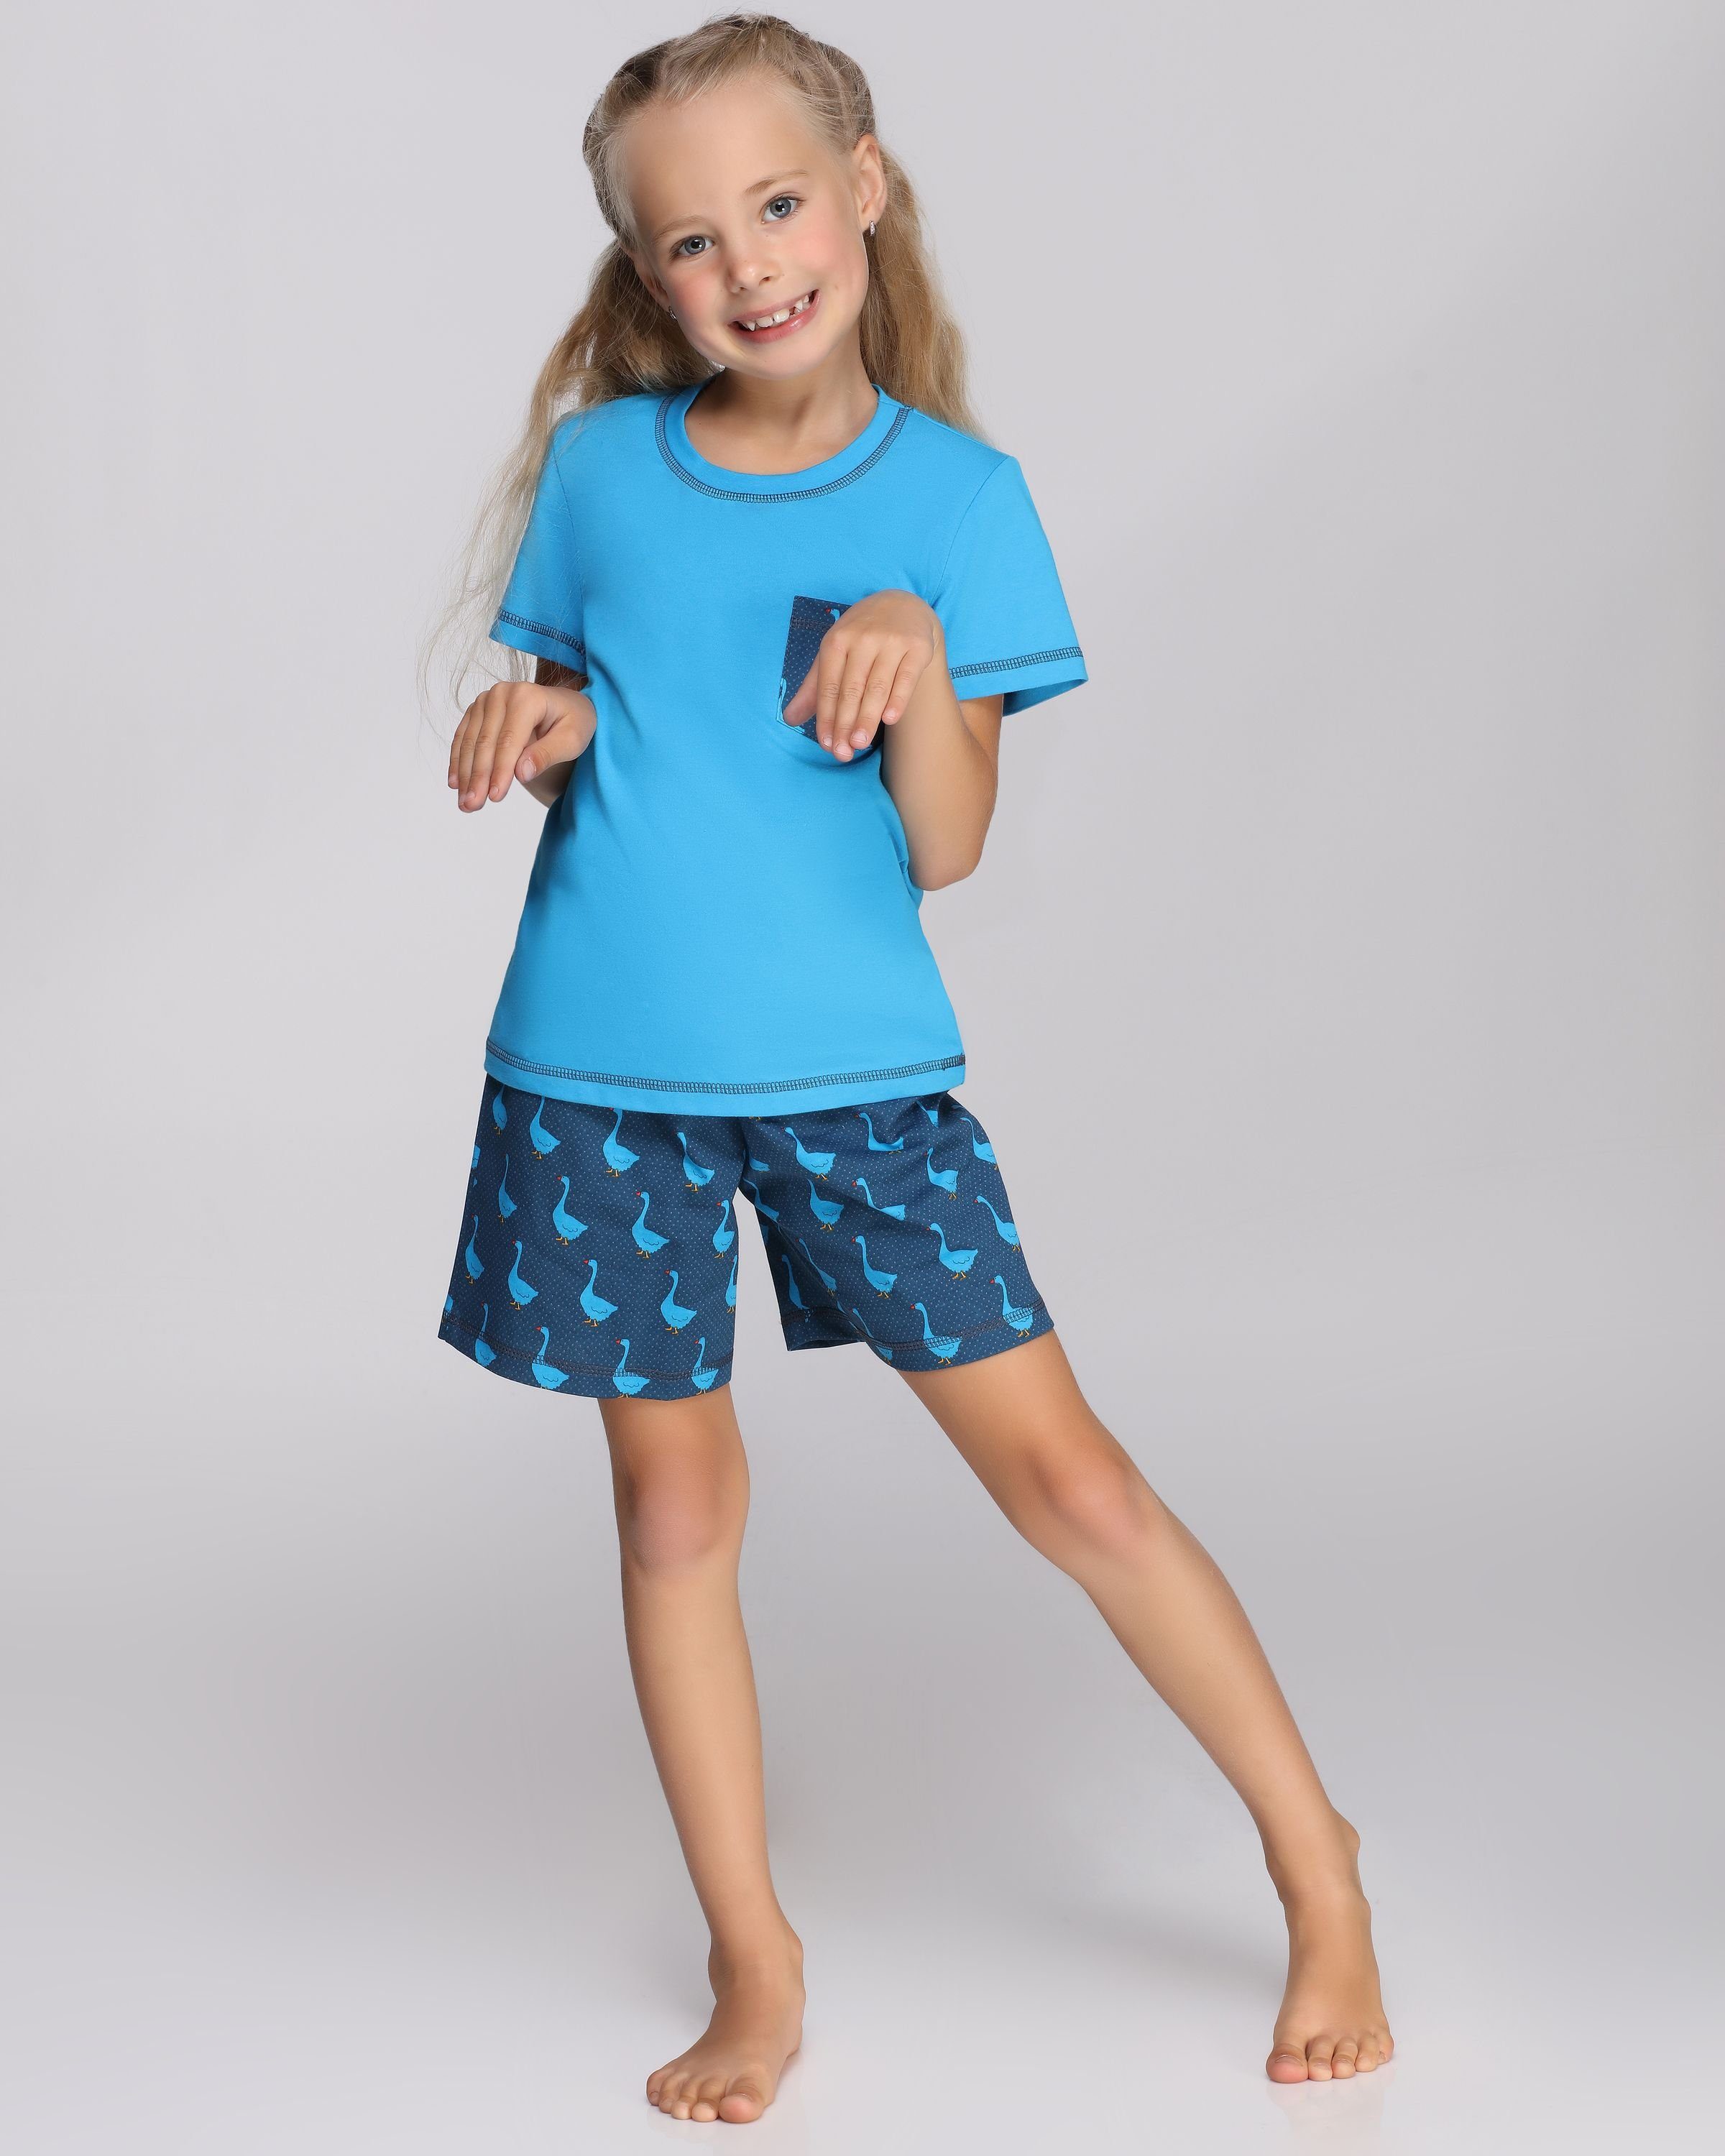 Merry Style Schlafanzug Blau/Gans Mädchen MS10-292 Schlafanzüge Baumwolle Pyjama Kurz Set aus